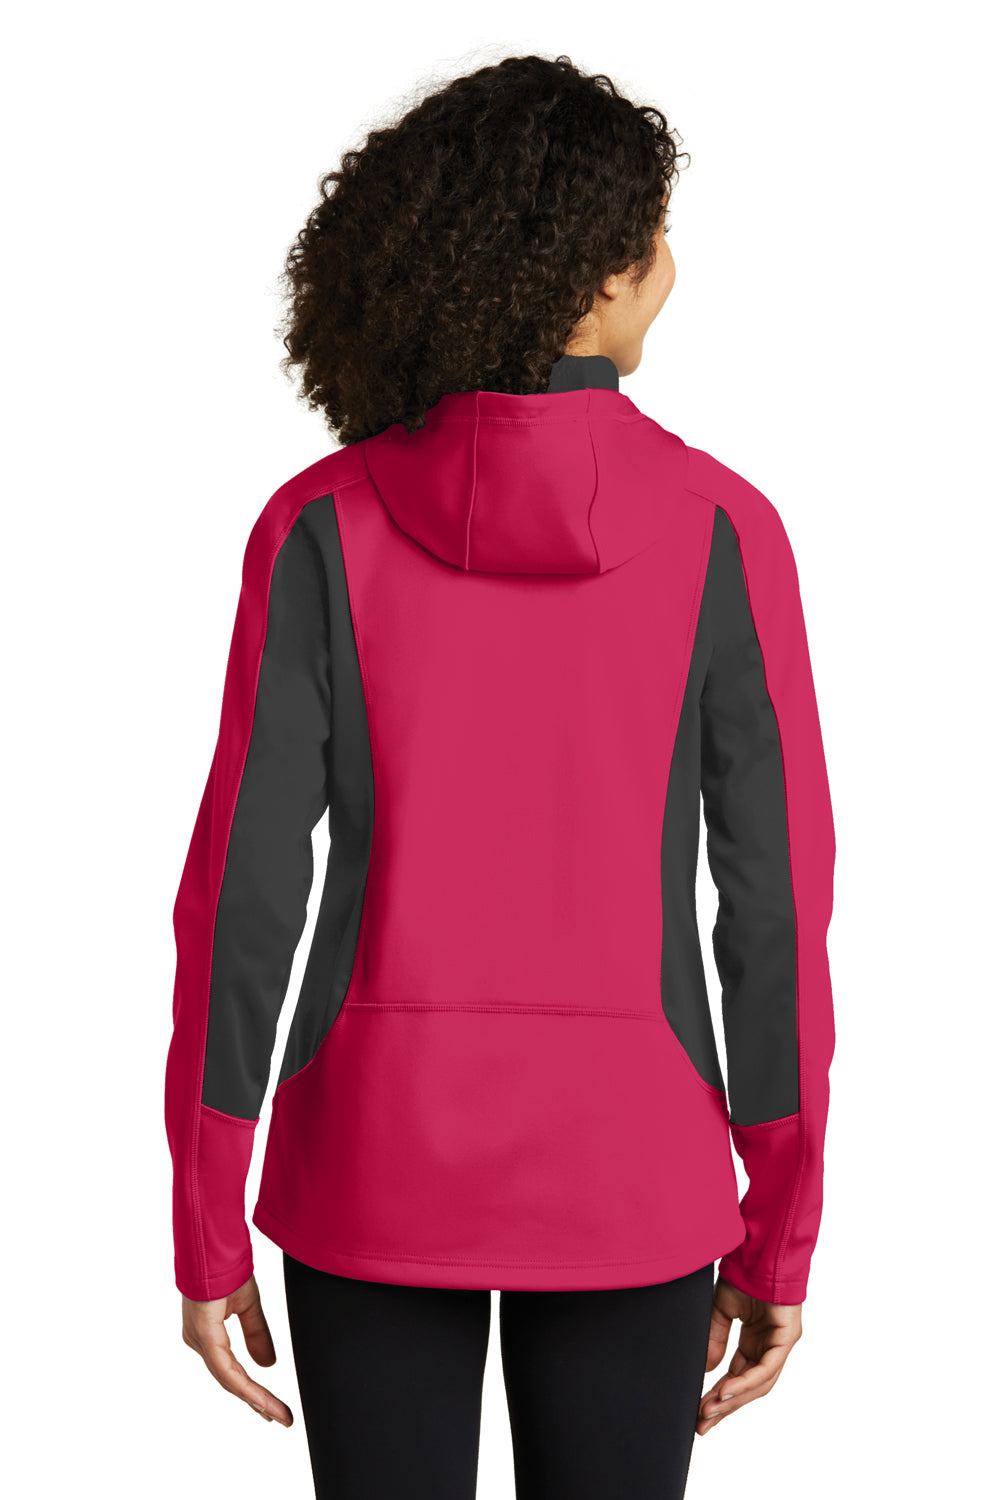 Eddie Bauer EB543 Womens Trail Water Resistant Full Zip Hooded Jacket Lotus Pink/Steel Grey Back